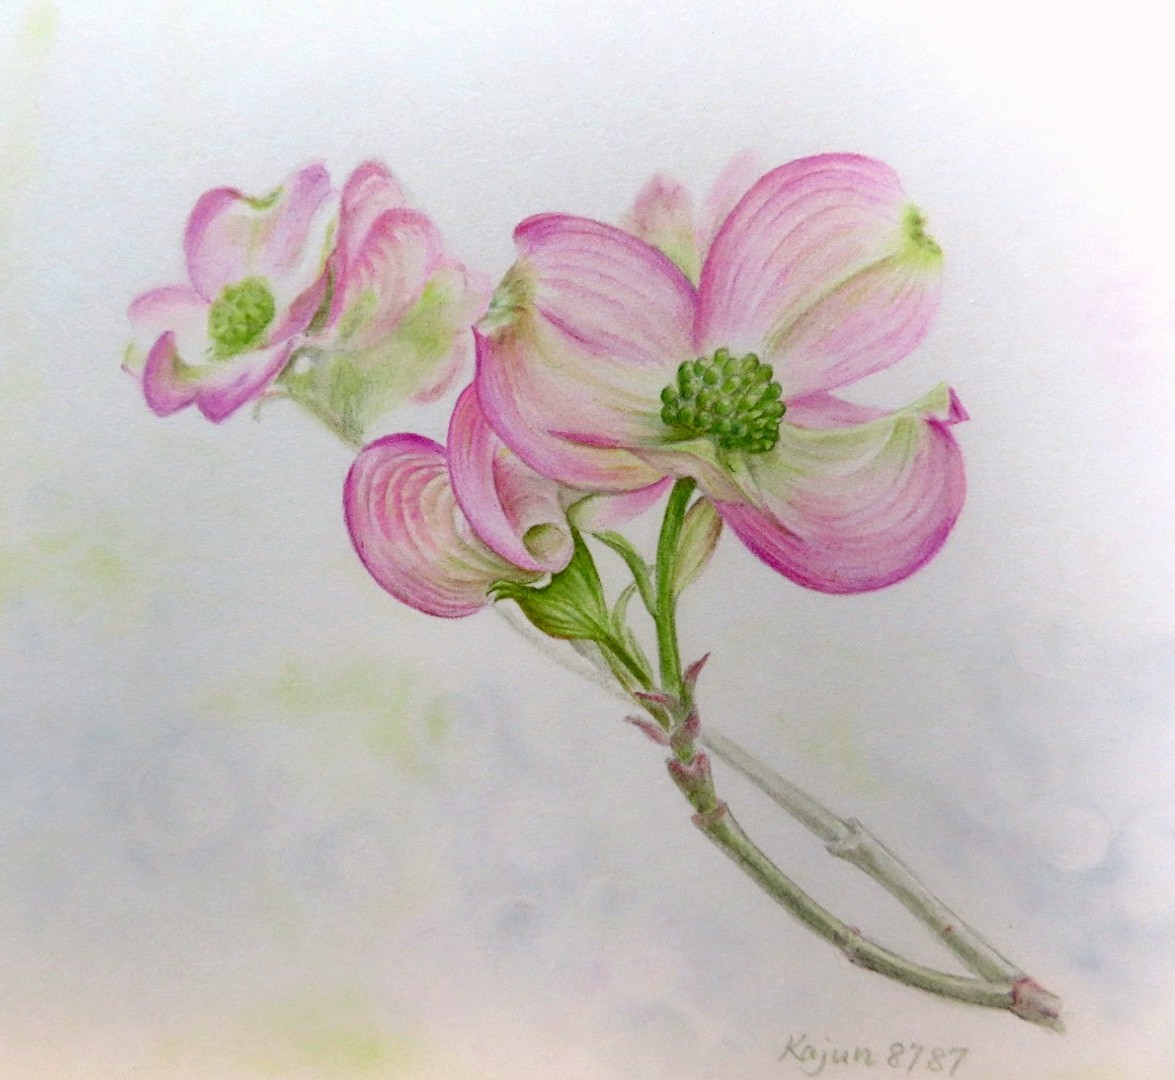 Kajun ハナミズキの色鉛筆画です 色も花の姿も可愛らしい花木です 色鉛筆画 色鉛筆イラスト ハナミズキ T Co Aw7pqby0z7 Twitter